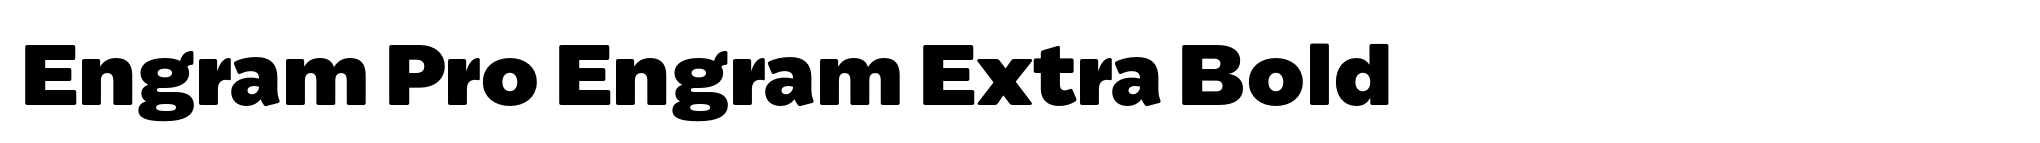 Engram Pro Engram Extra Bold image